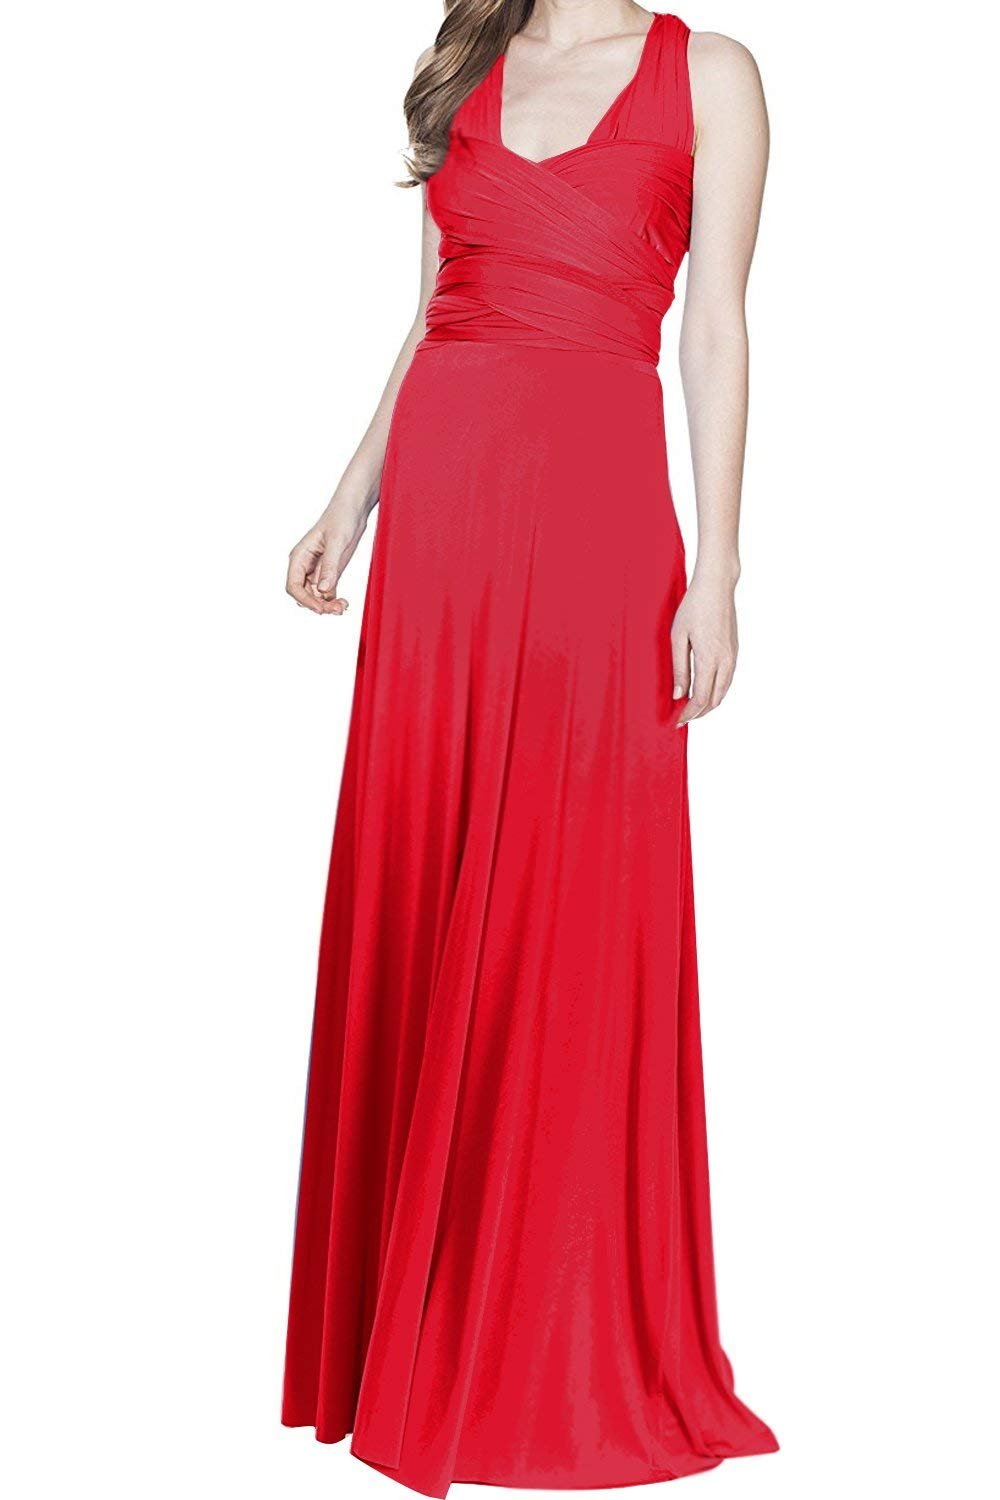 Damen Frauen Elgant V-Ausschnitt Brautjungfernkleid Infinity Abendkleid Geknotetem Multiway Rückenfrei Neckholder Cocktailkleid Rot L